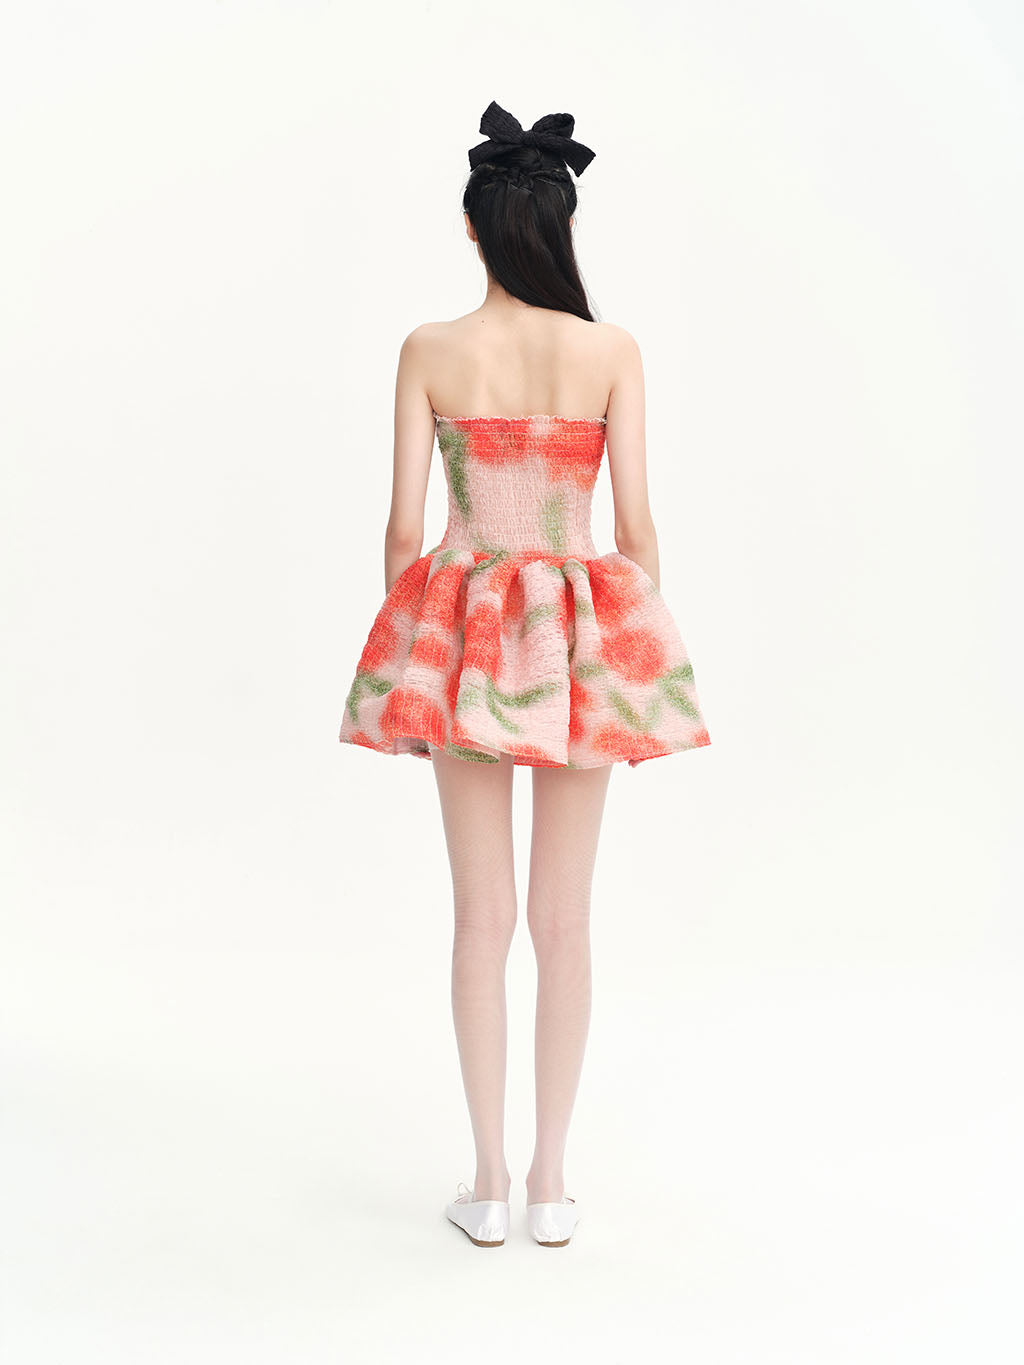 CHICTOPIA - Beige Rosetta Dress, buy at DOORS NYC